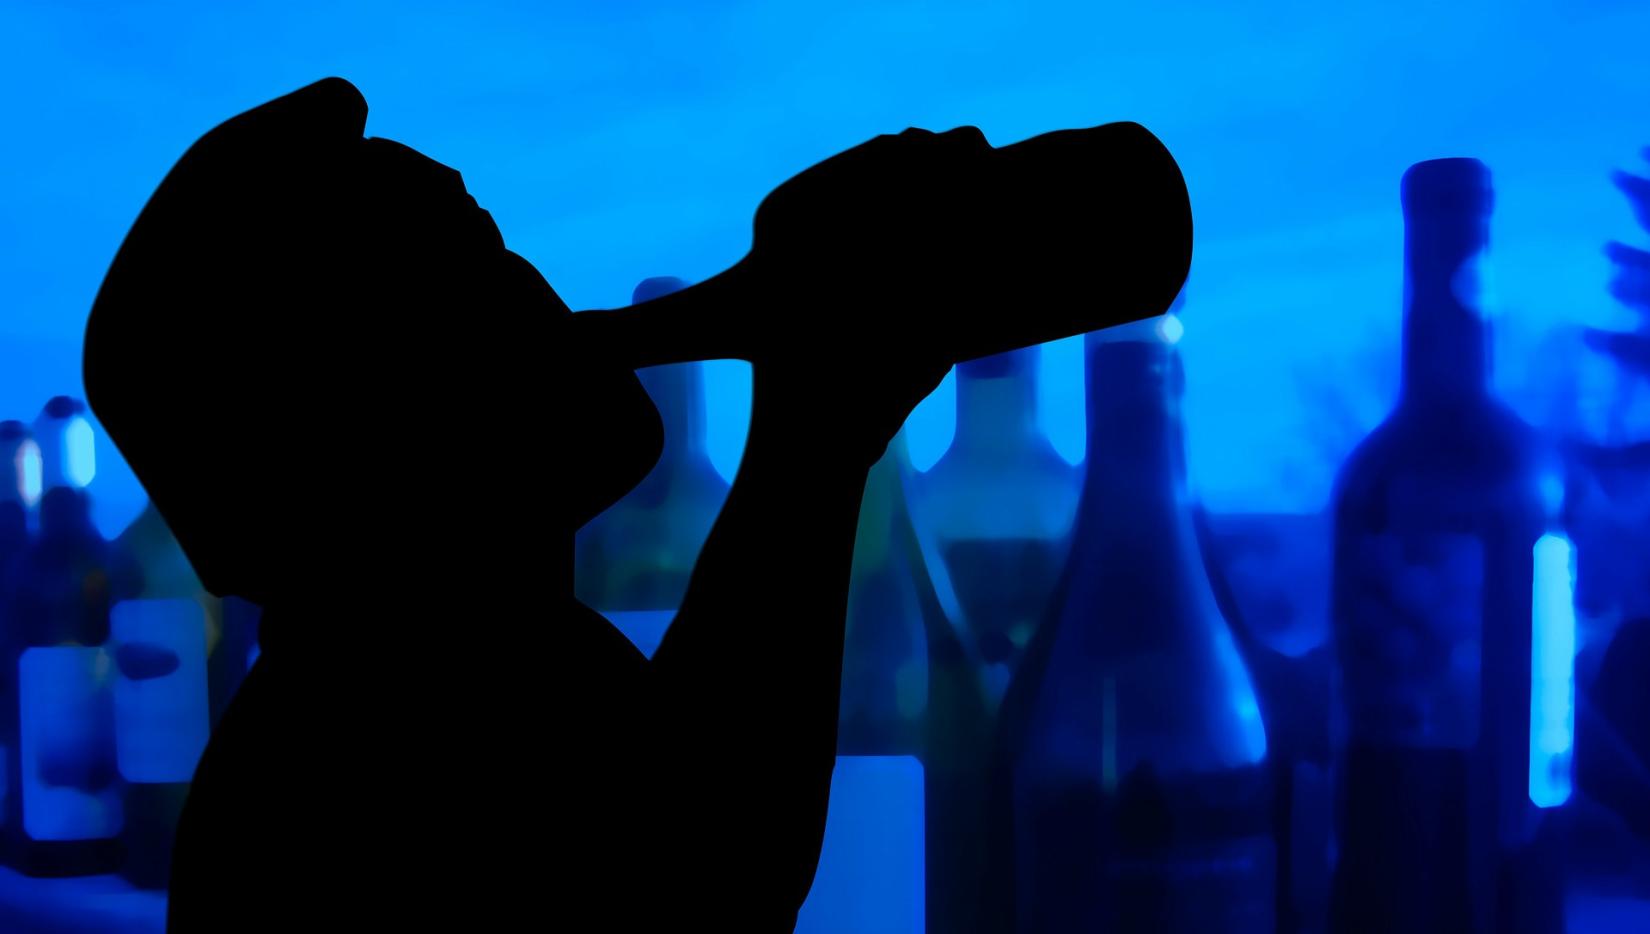 O consumo de álcool contribui para mais de 300 mil mortes todos os anos. A OPAS pede aos países das Américas que limitem horário para venda de álcool, proíbam publicidade de bebidas alcoólicas e aumentem os impostos sobre esses produtos.